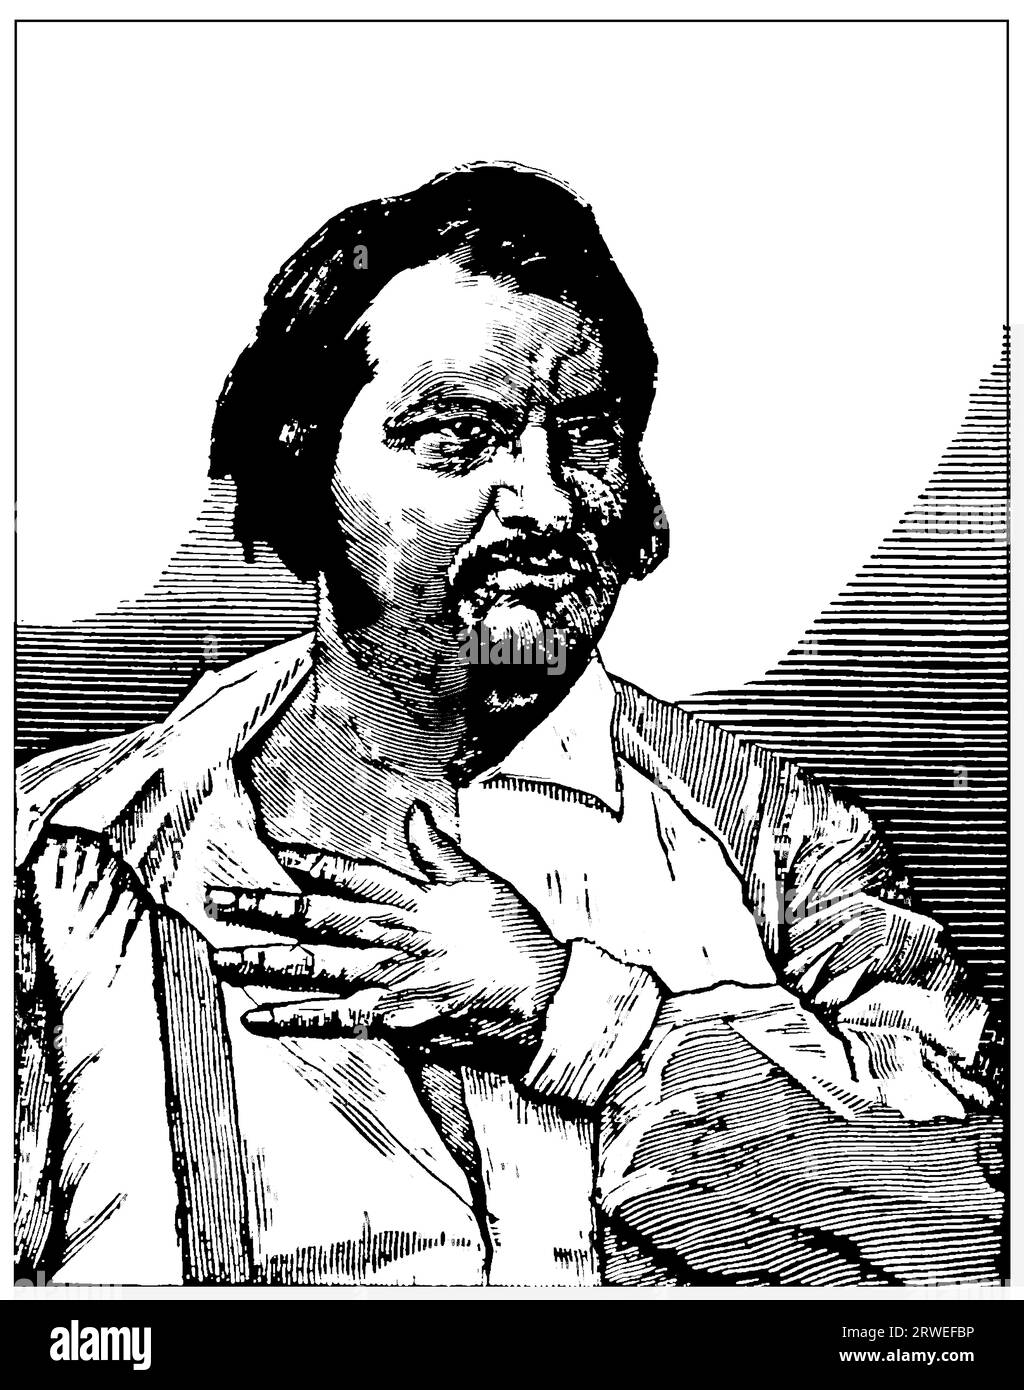 Ritratto di Balzac, romanziere francese - illustrazione d'epoca Foto Stock